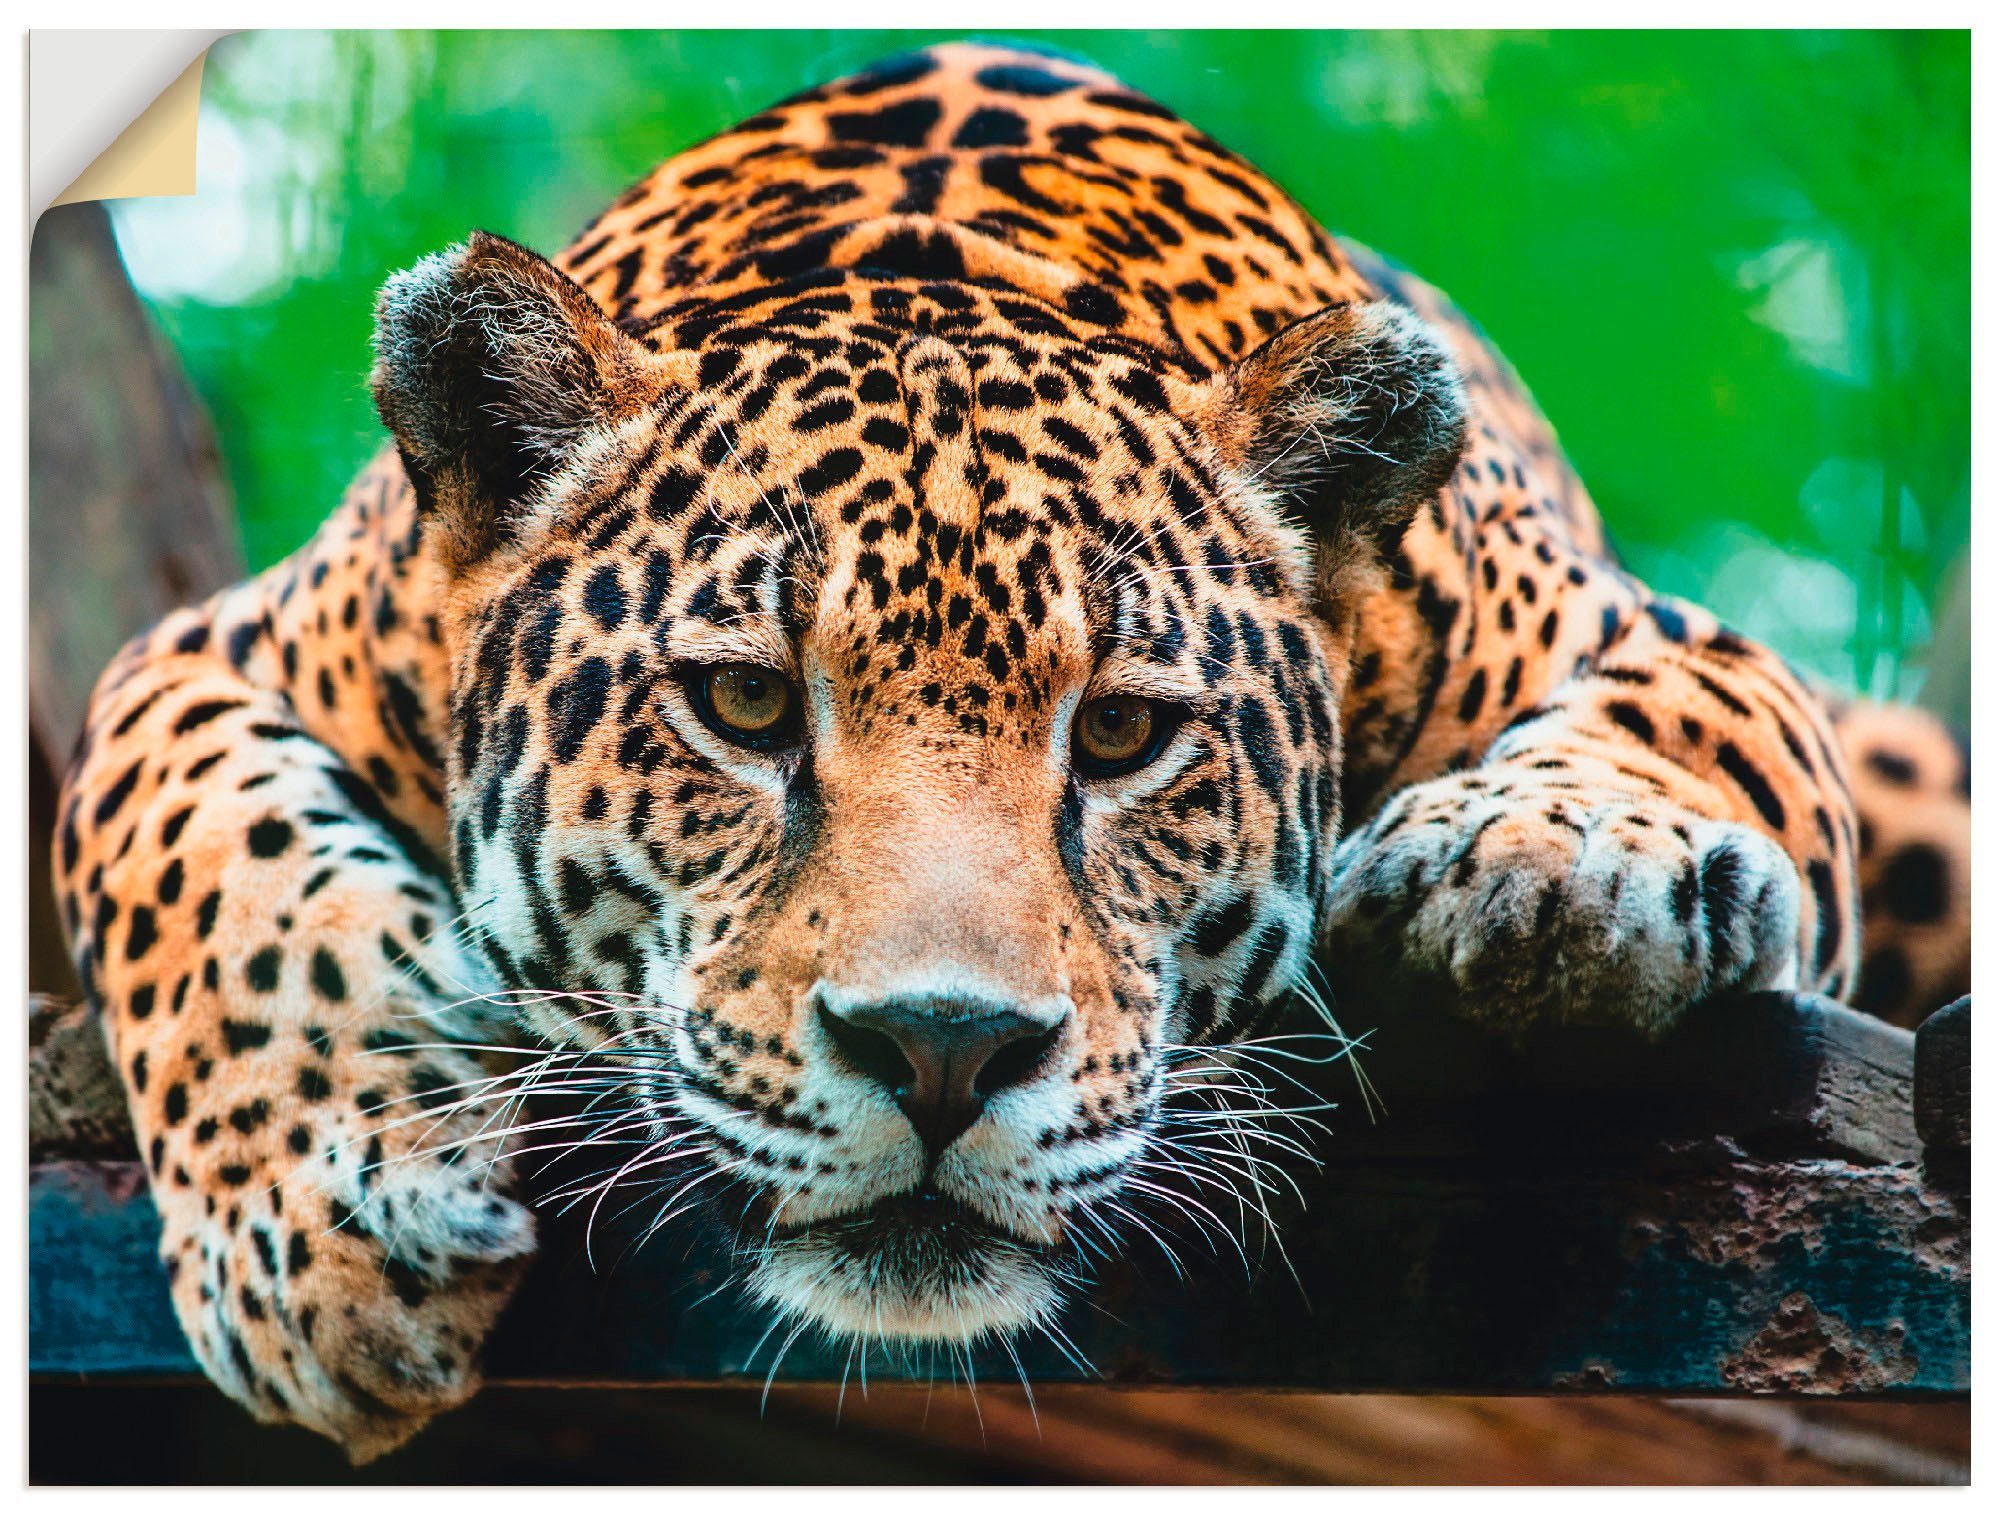 Artland Artprint Zuid-Amerikaanse jaguar in vele afmetingen & productsoorten - artprint van aluminium / artprint voor buiten, artprint op linnen, poster, muursticker / wandfolie oo